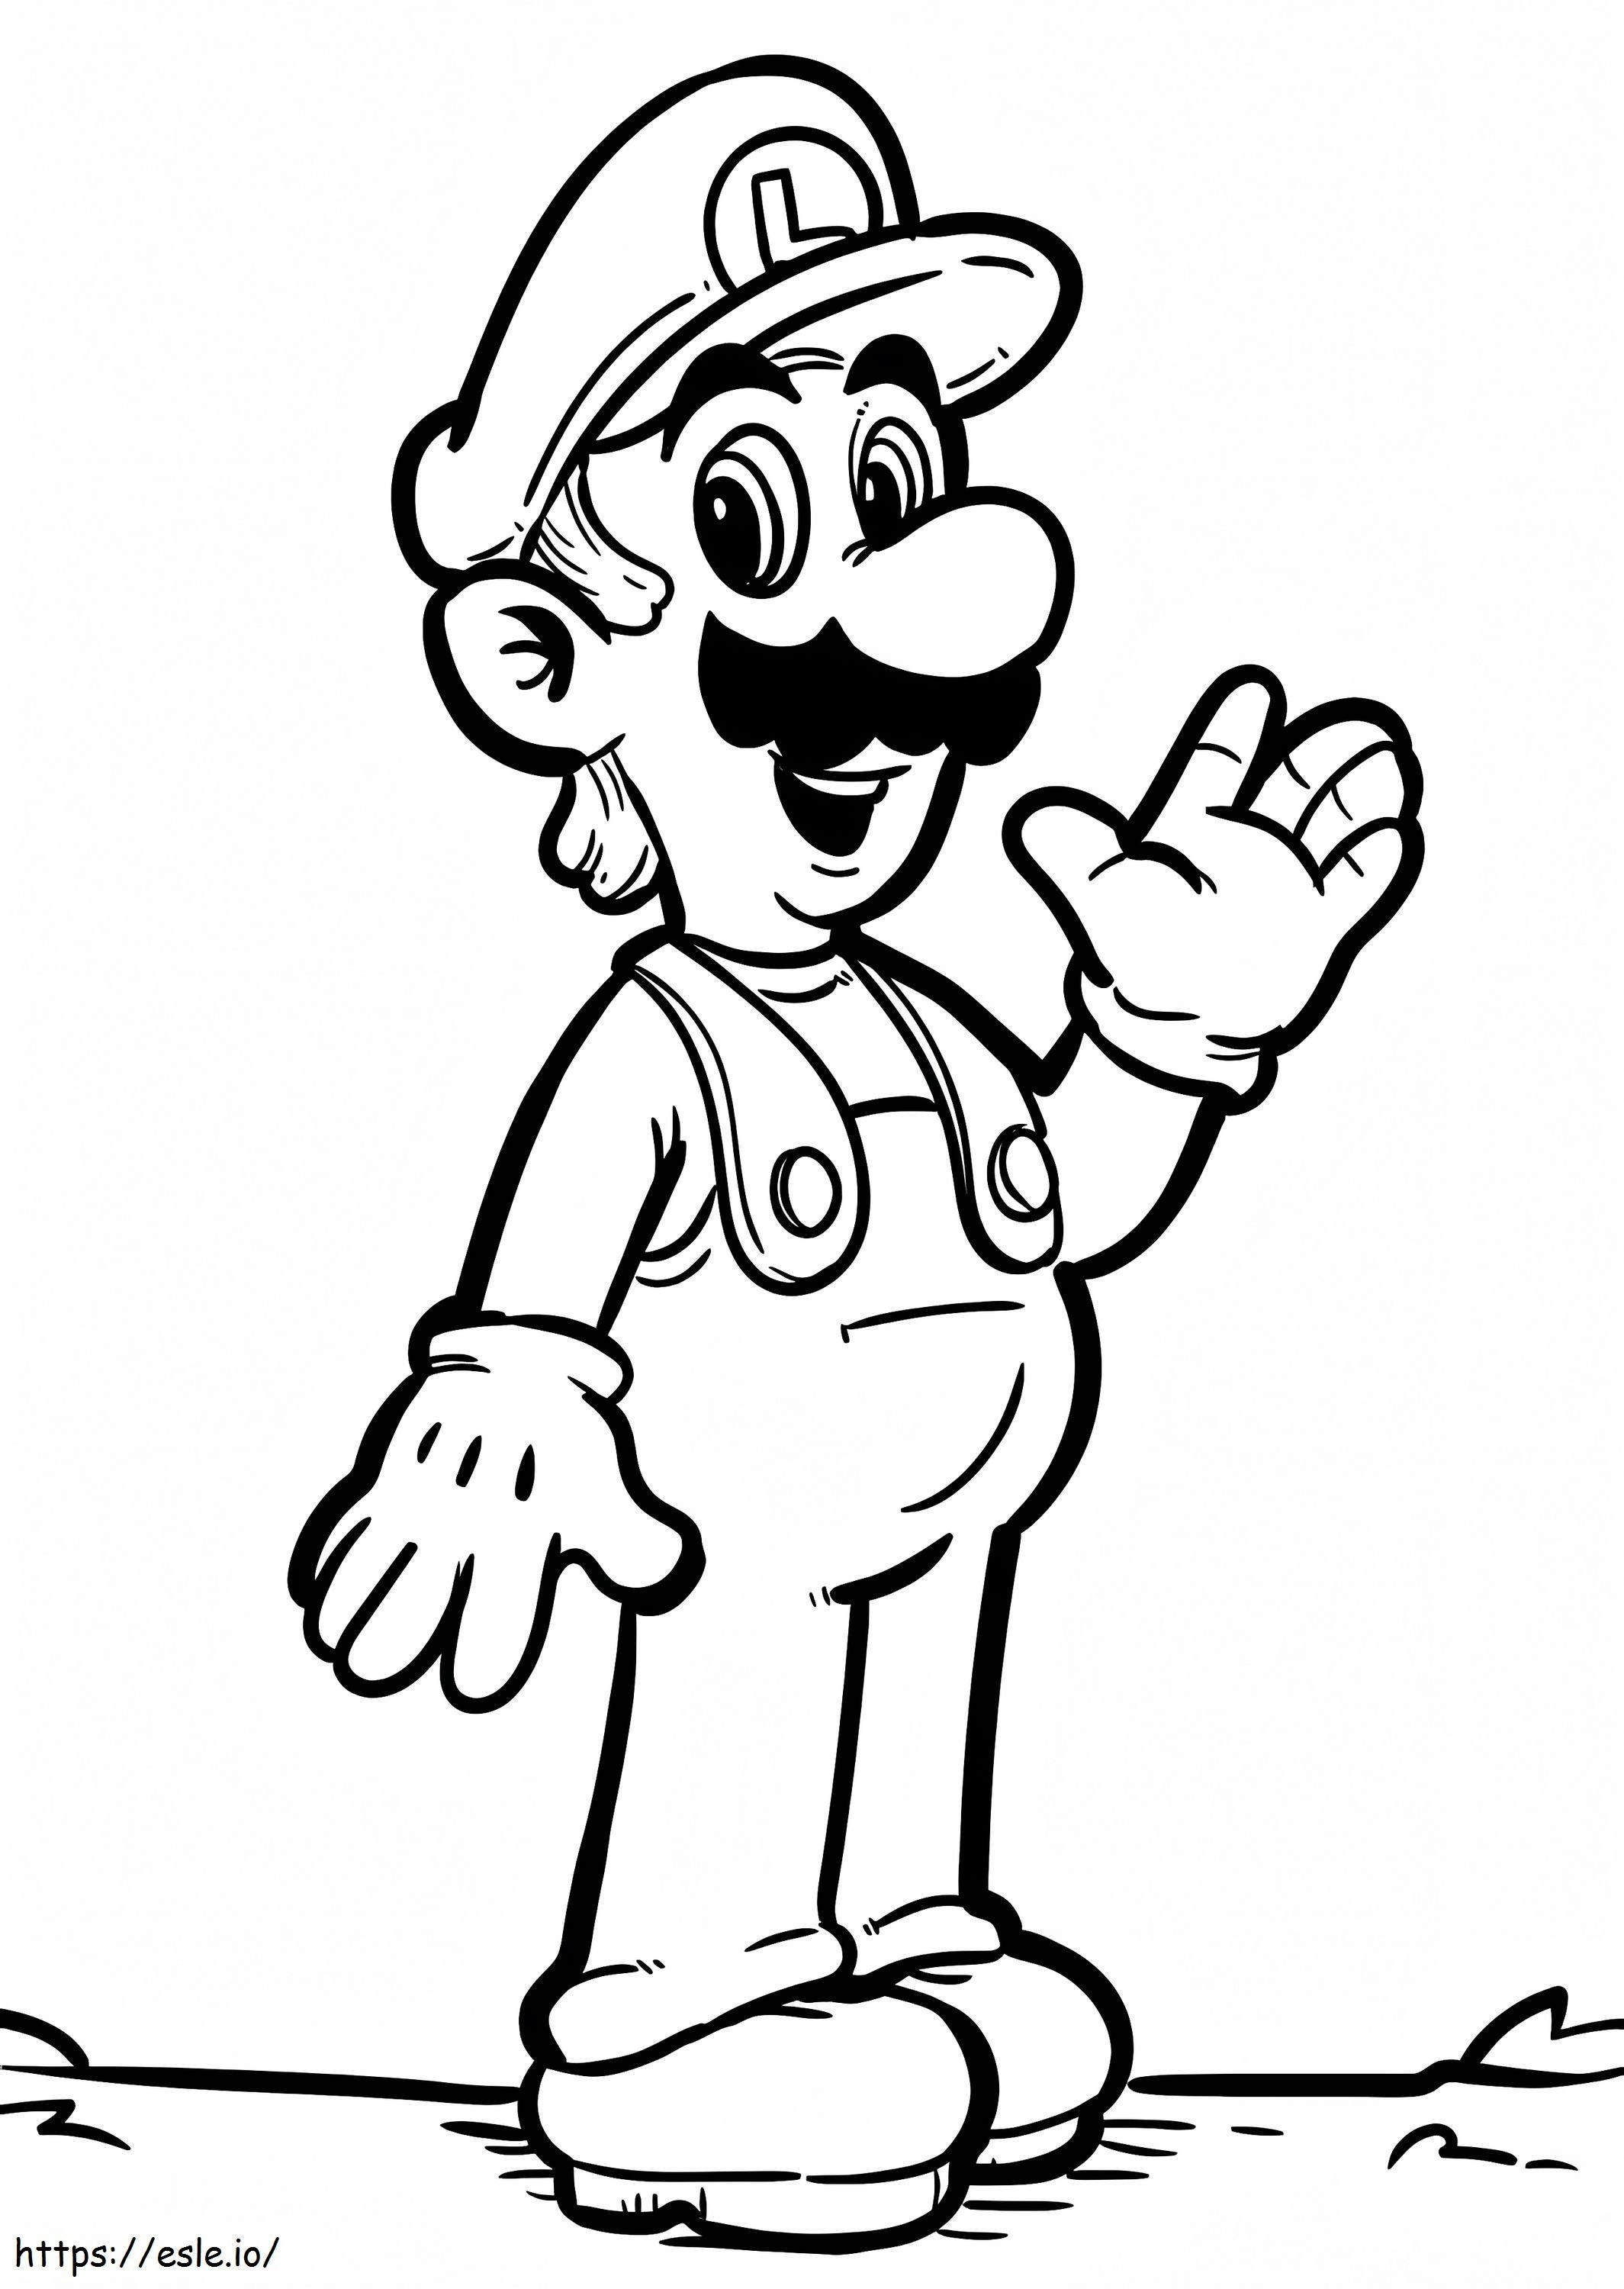 Luigi De Super Mario 2 de colorat